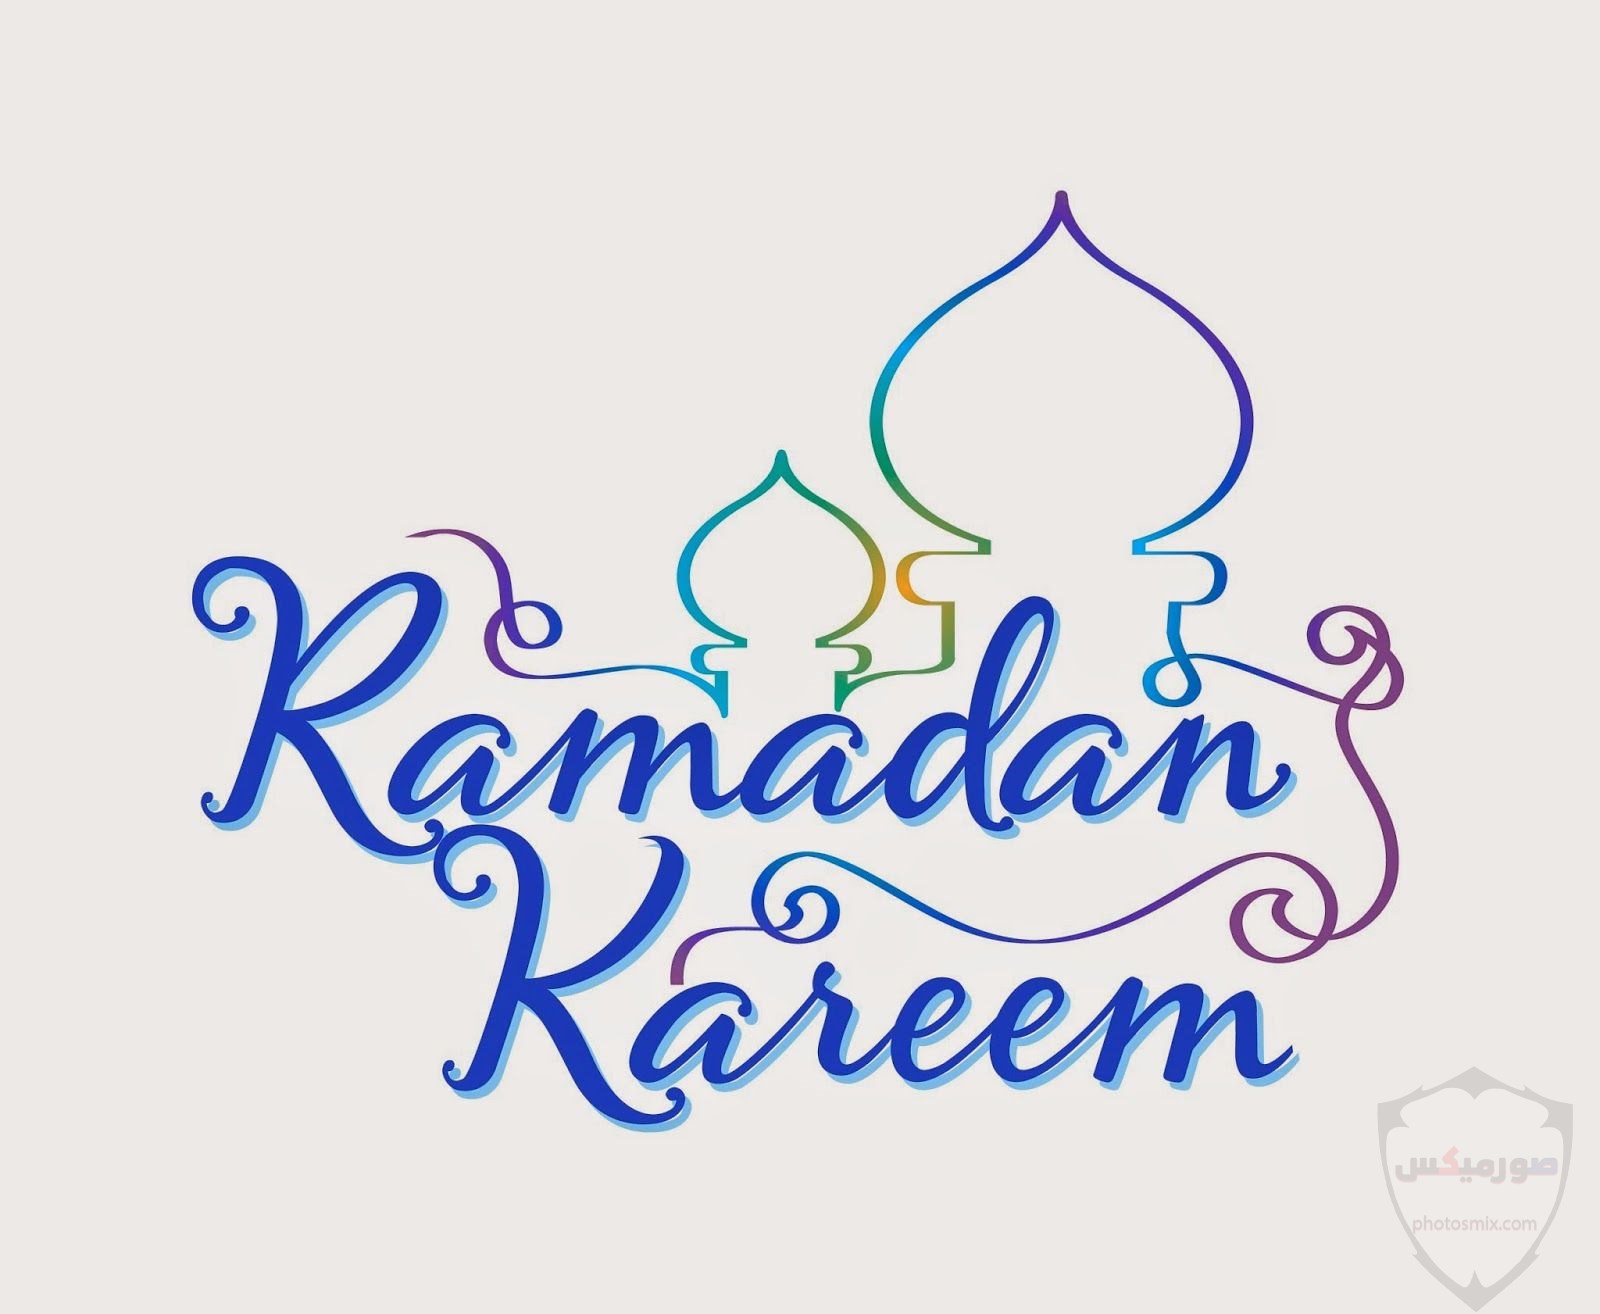 أدعية شهر رمضان 2020 مكتوبة “حصن المسلم” 24